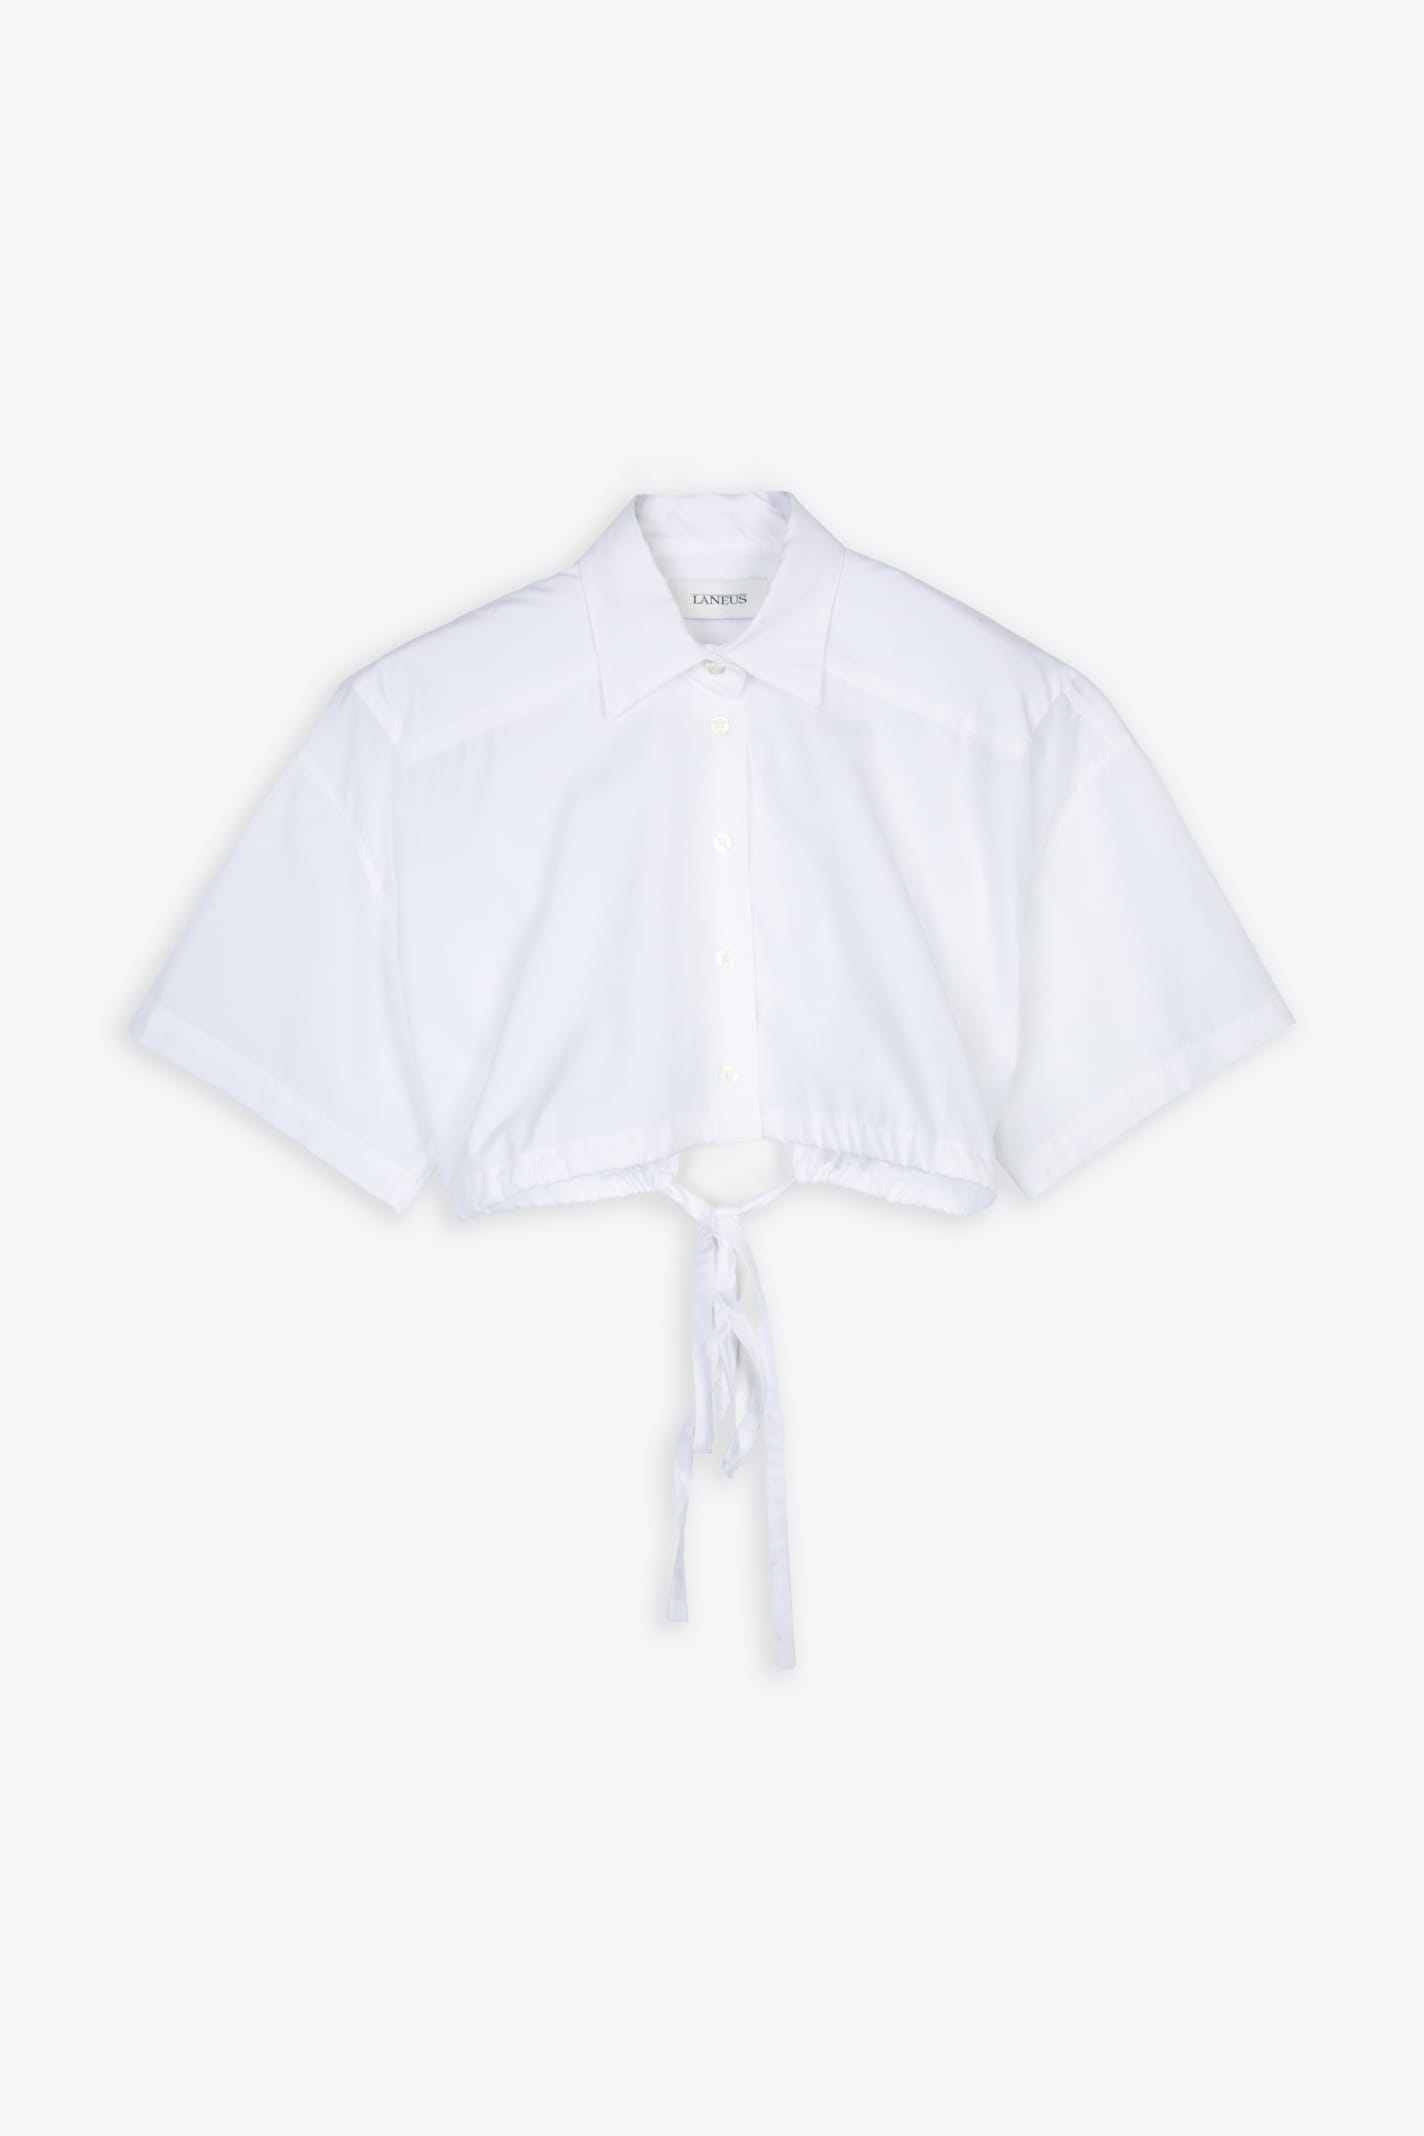 Crop Shirt Woman White poplin cropped shirt - Crop shirt